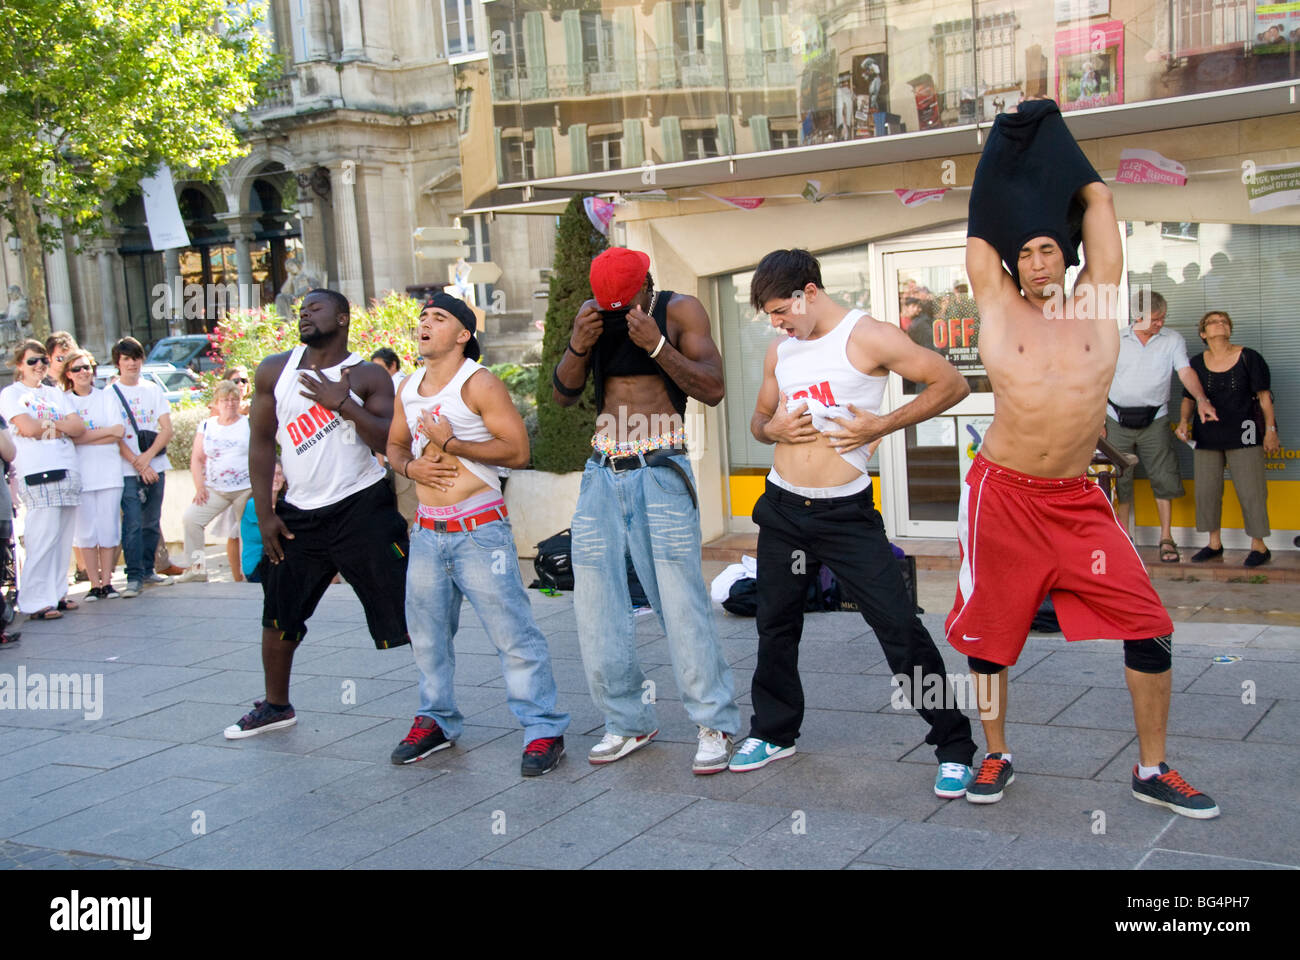 Participants in the annual Avignon Theater Festival, Avignon, Provence, France Stock Photo